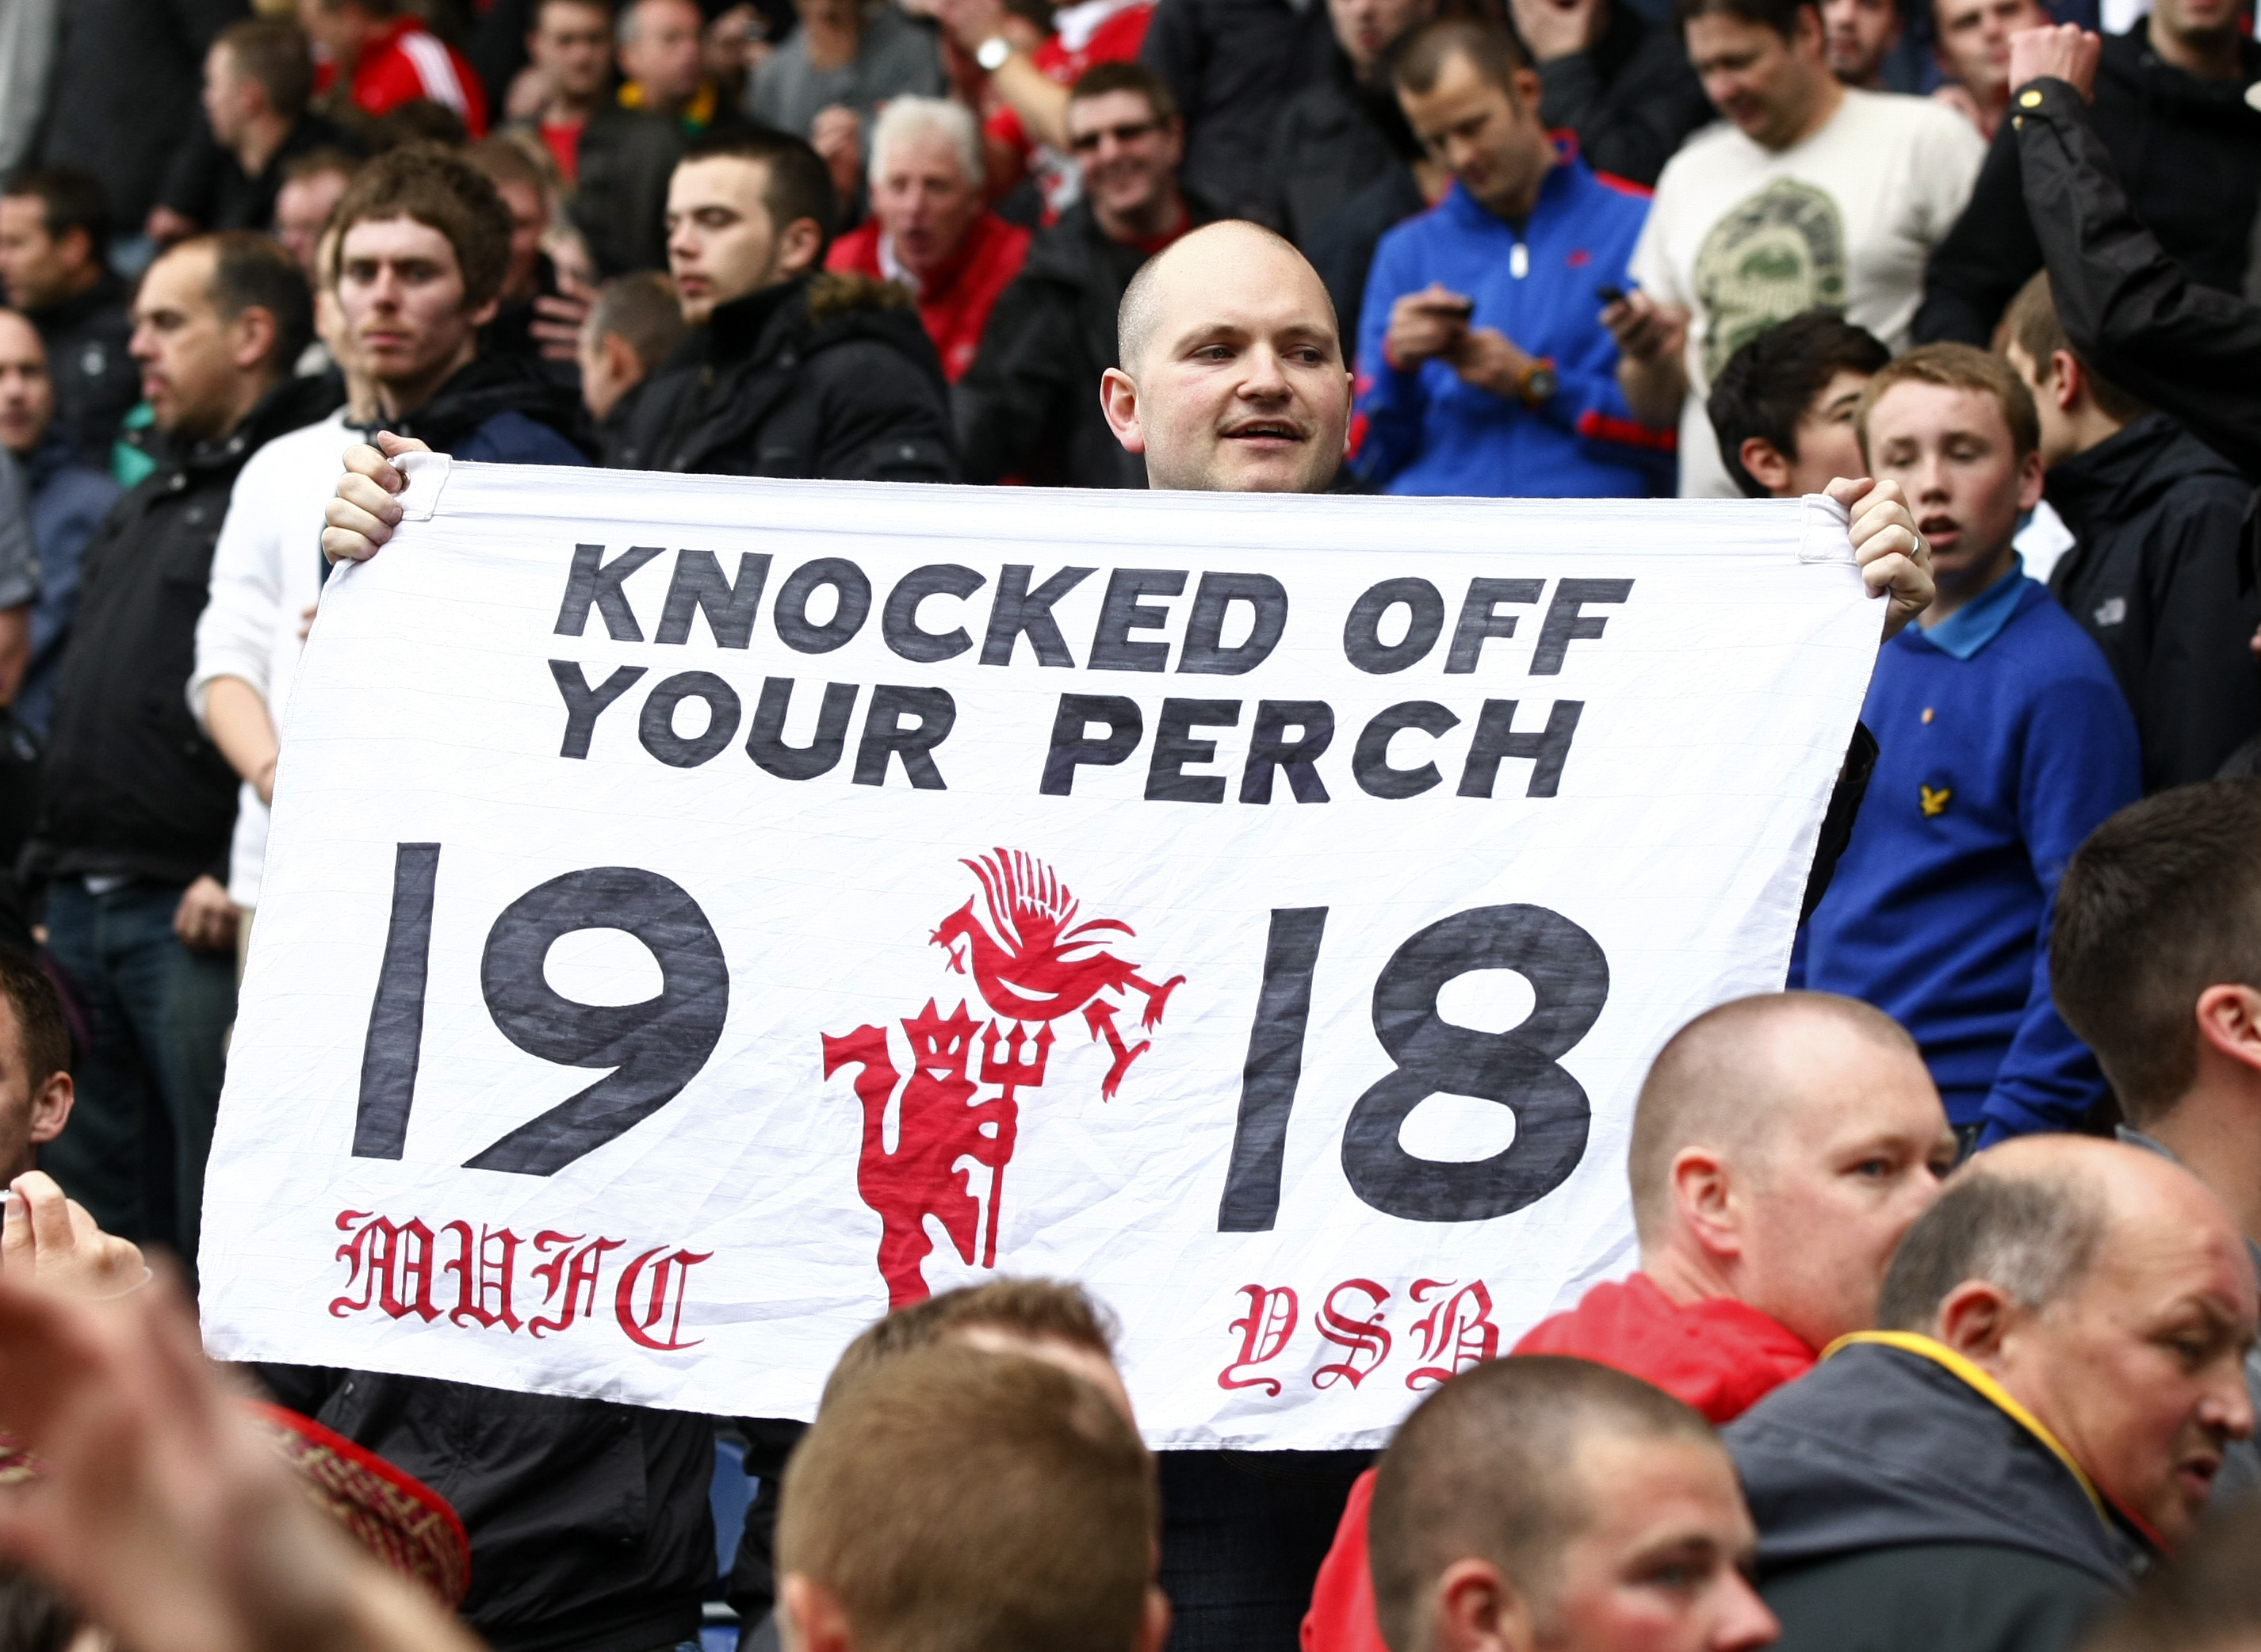 Bråket kommer efter flera hånfulla hälsningar till Liverpool från Man United-supportar, Rooney samt Sir Alex Ferguson.